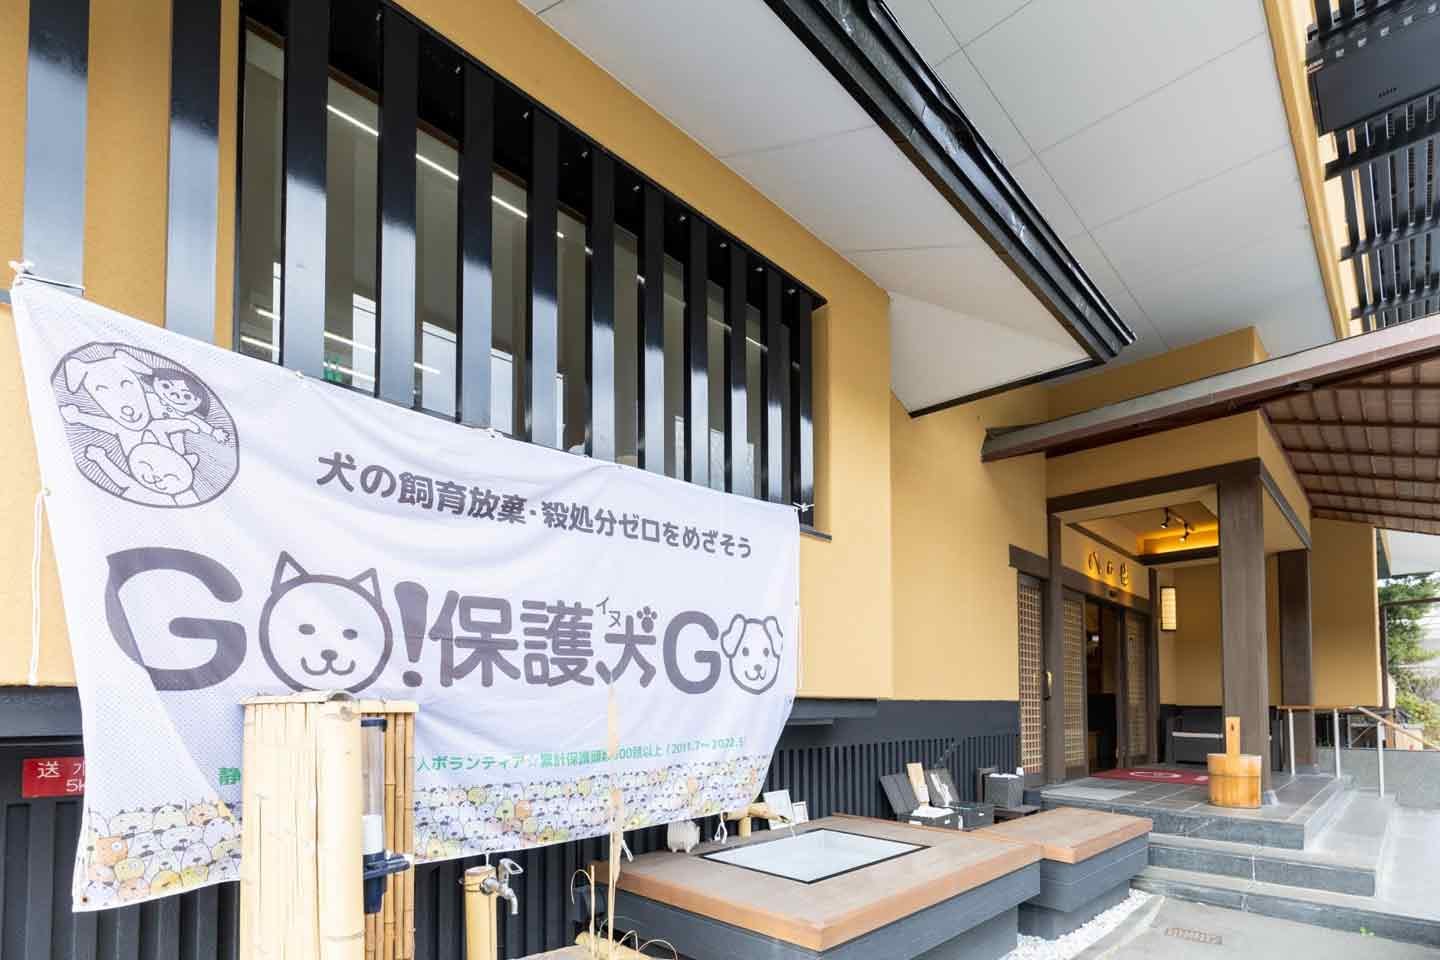 静岡県御殿場市のボランティア団体『GO！保護犬GO』